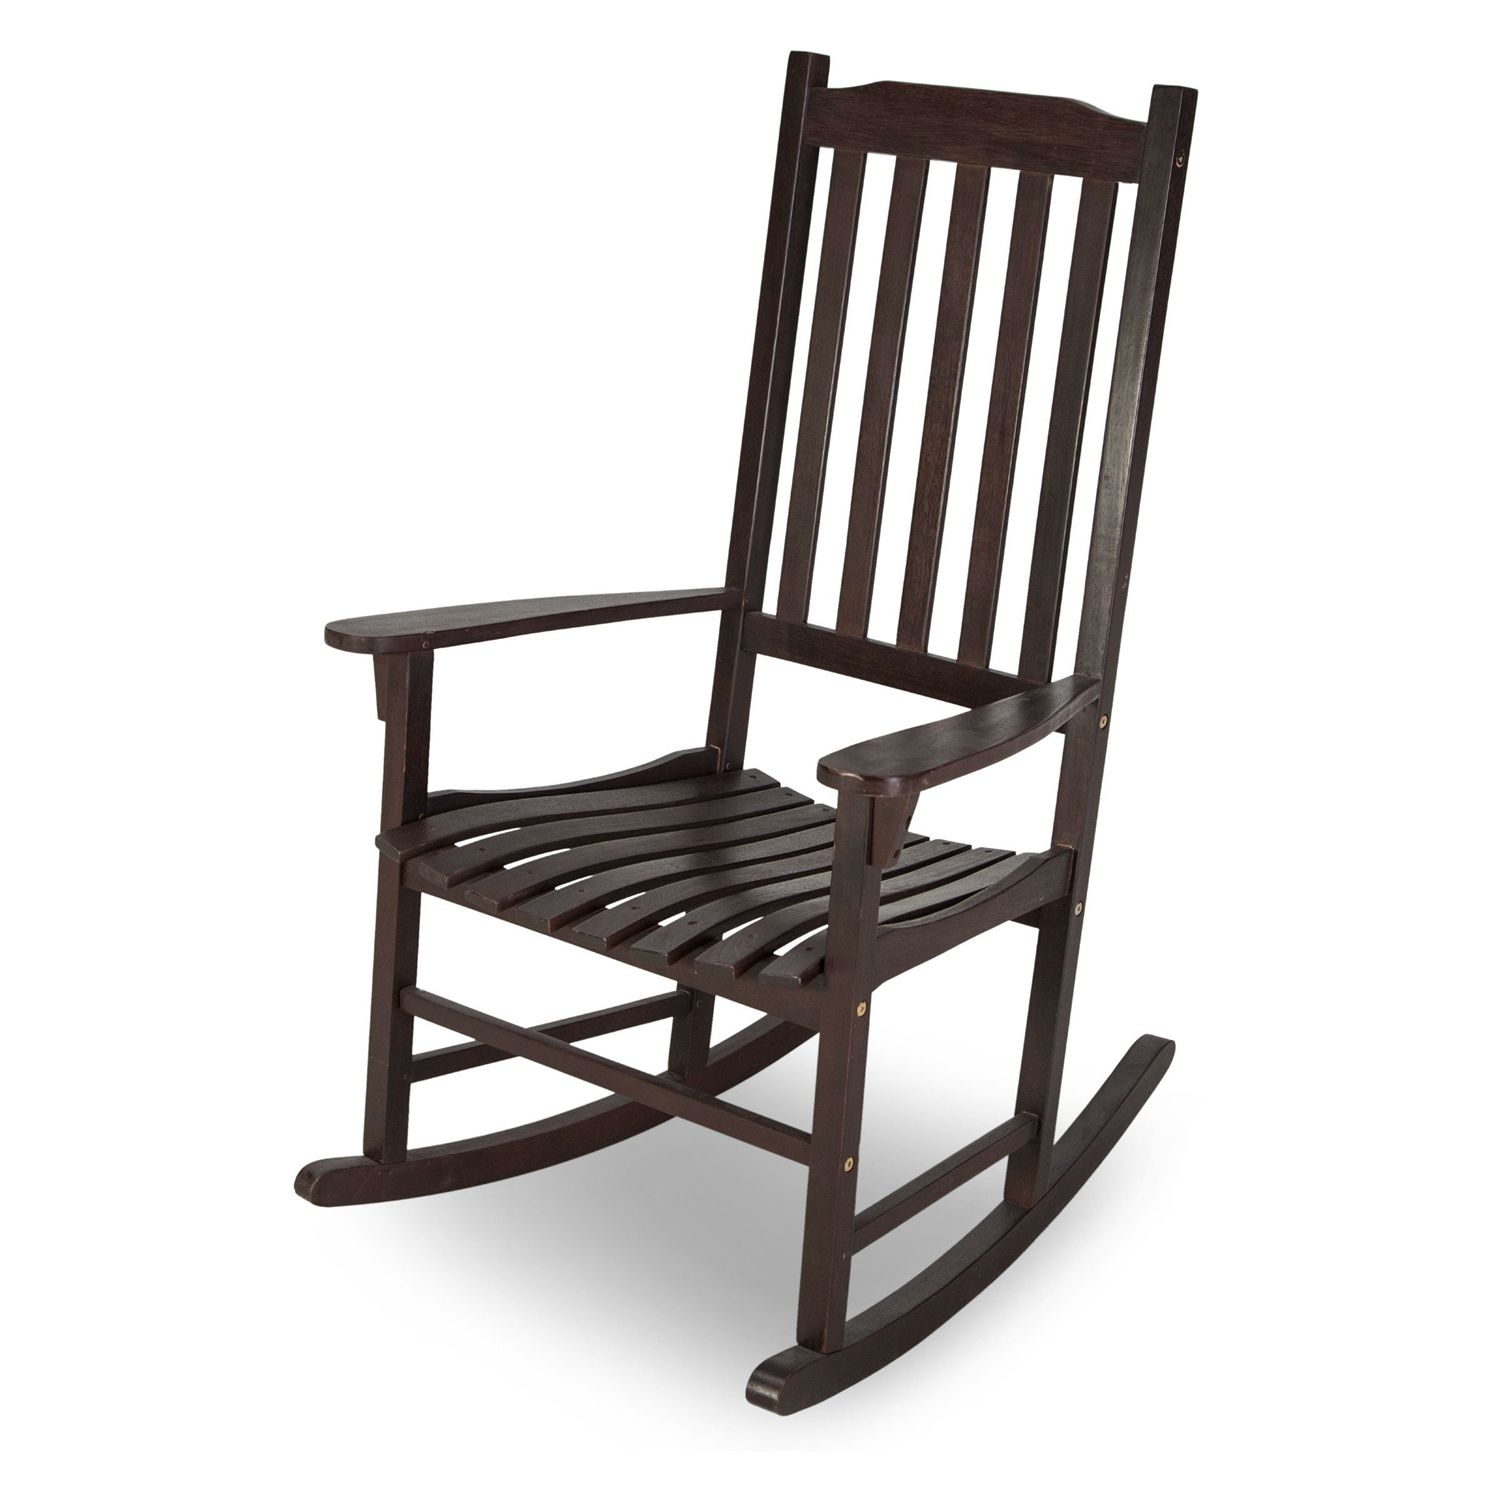 Indoor/Outdoor Dark Brown Slat Rocking Chair | Fastfurnishings For Dark Brown Wood Outdoor Chairs (View 10 of 15)